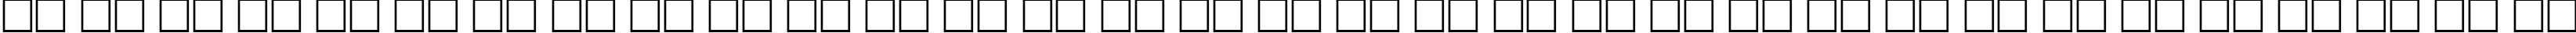 Пример написания русского алфавита шрифтом ParkAvenue